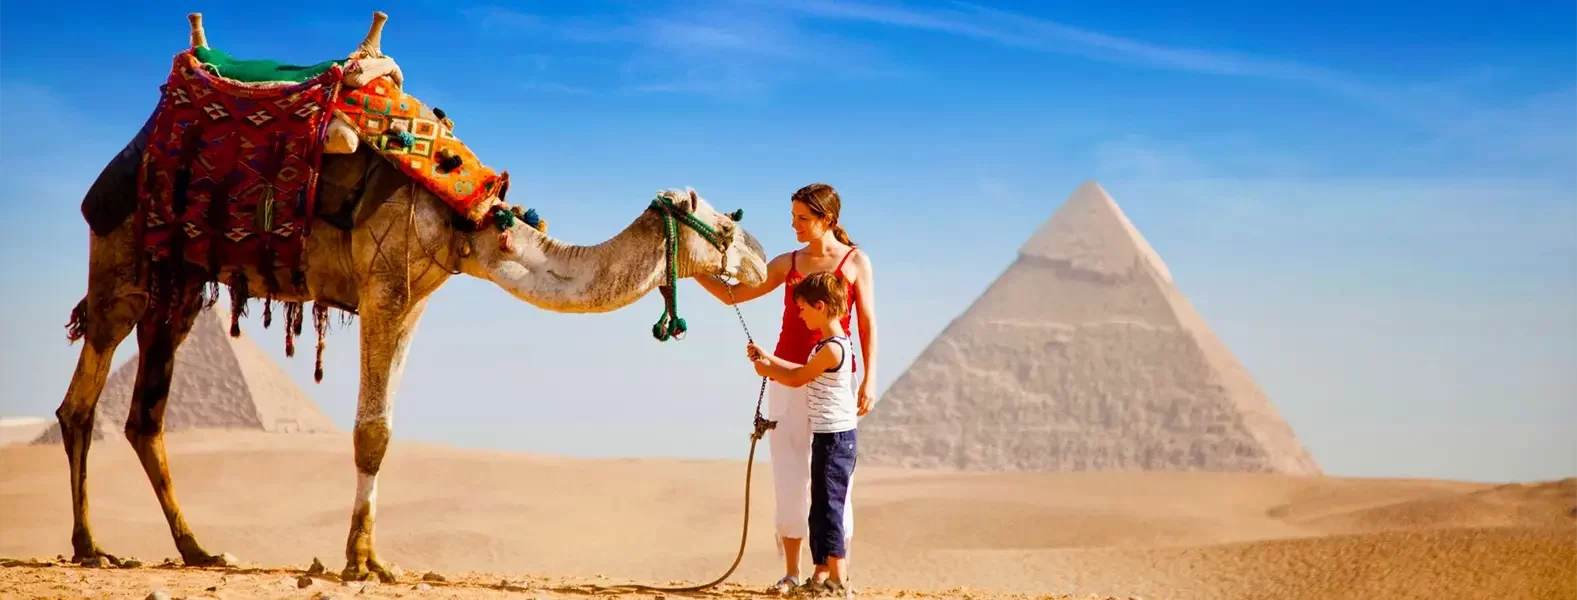 Egypt Easter Tours - Giza Pyramids